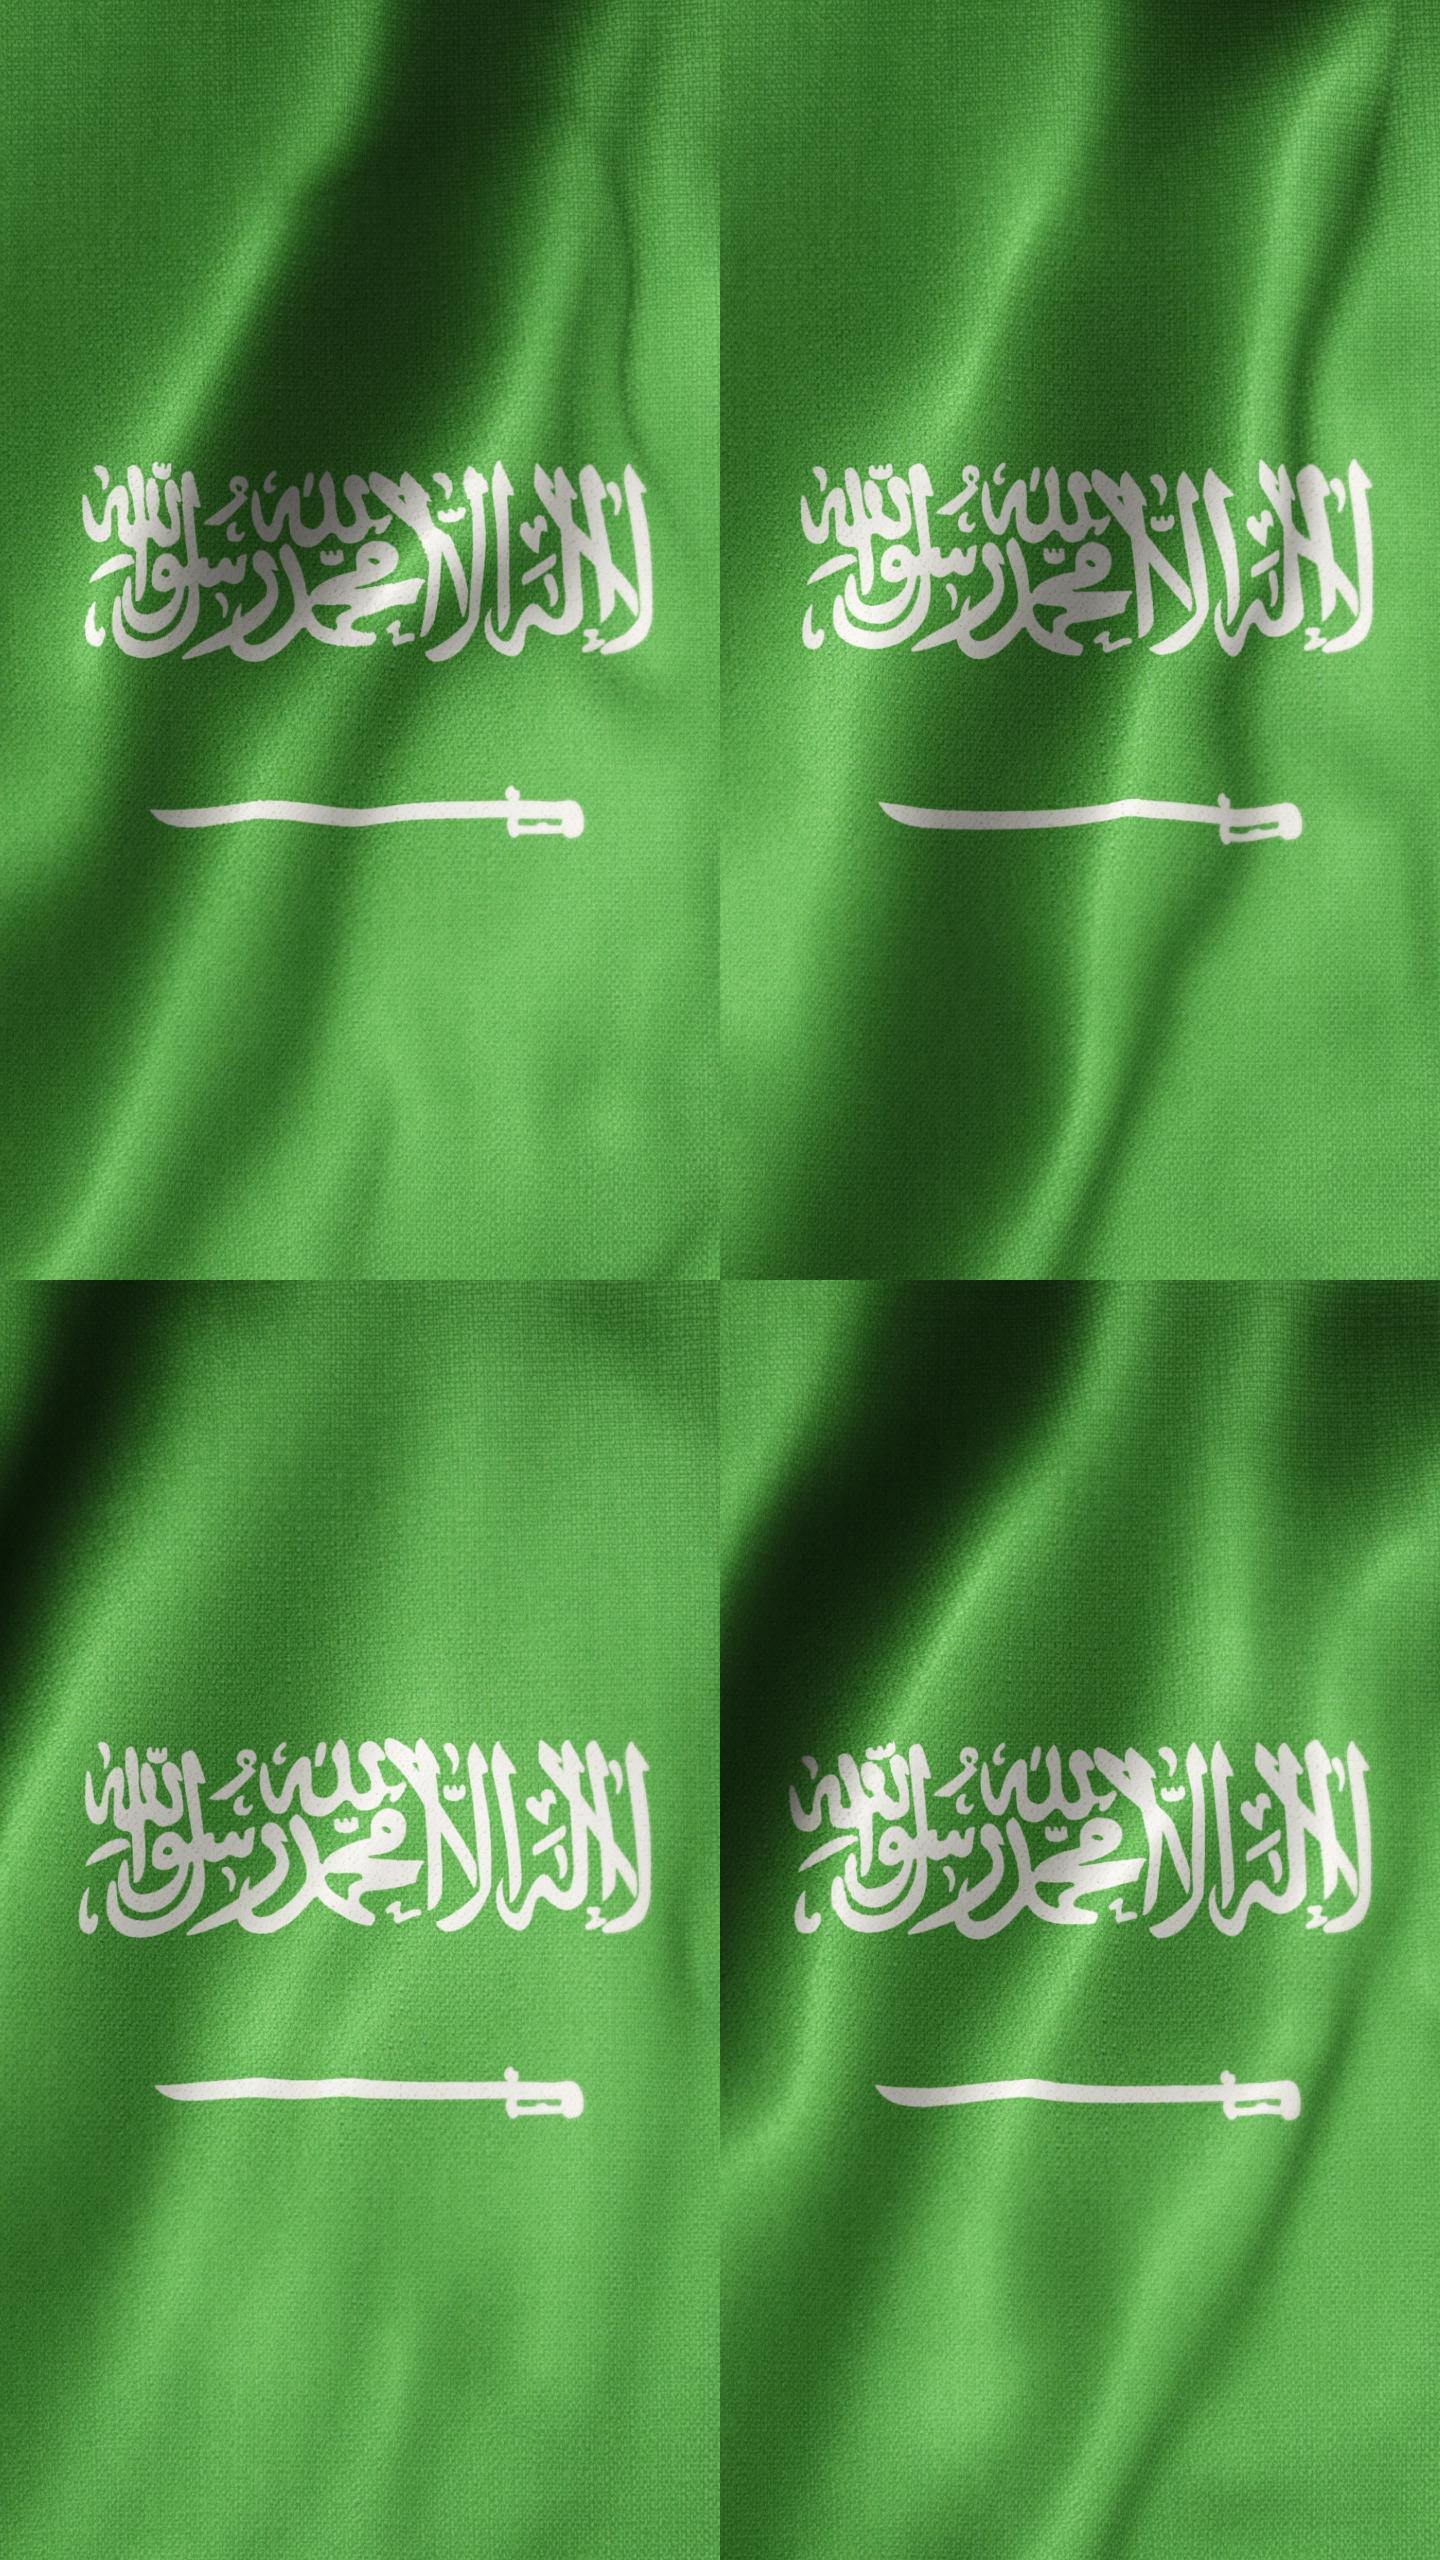 沙特阿拉伯国旗竖屏竖版旗帜绸缎布料